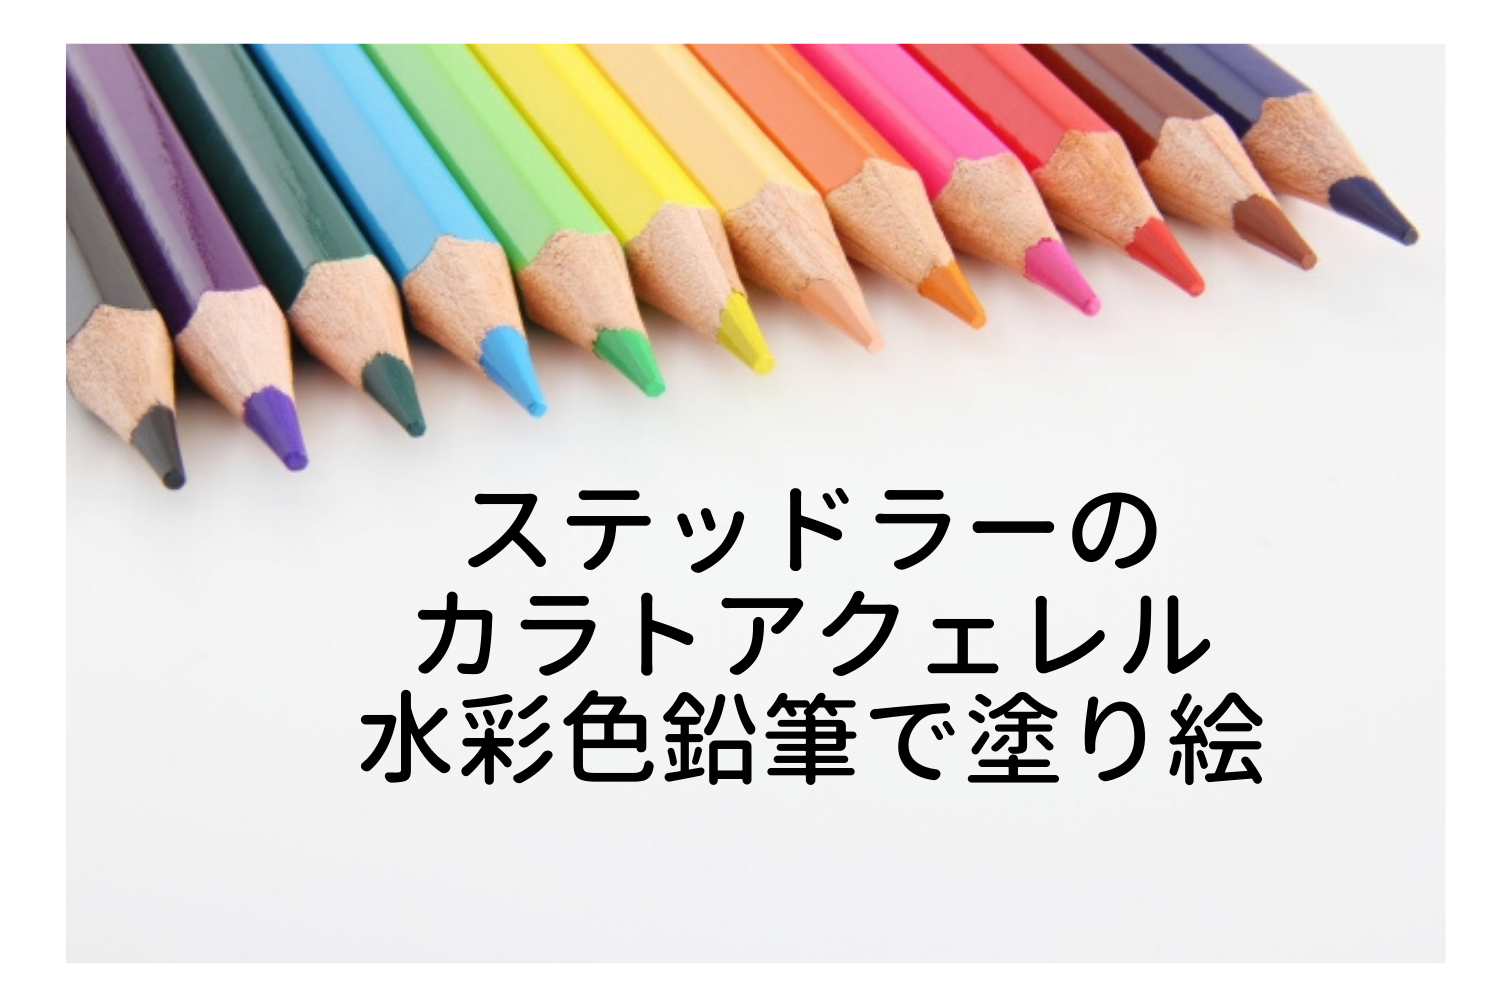 水彩色鉛筆で塗り絵をしたら色合いはどんな感じになるのか 100均の塗り絵でお試し写真付きレビュー いいものリスト